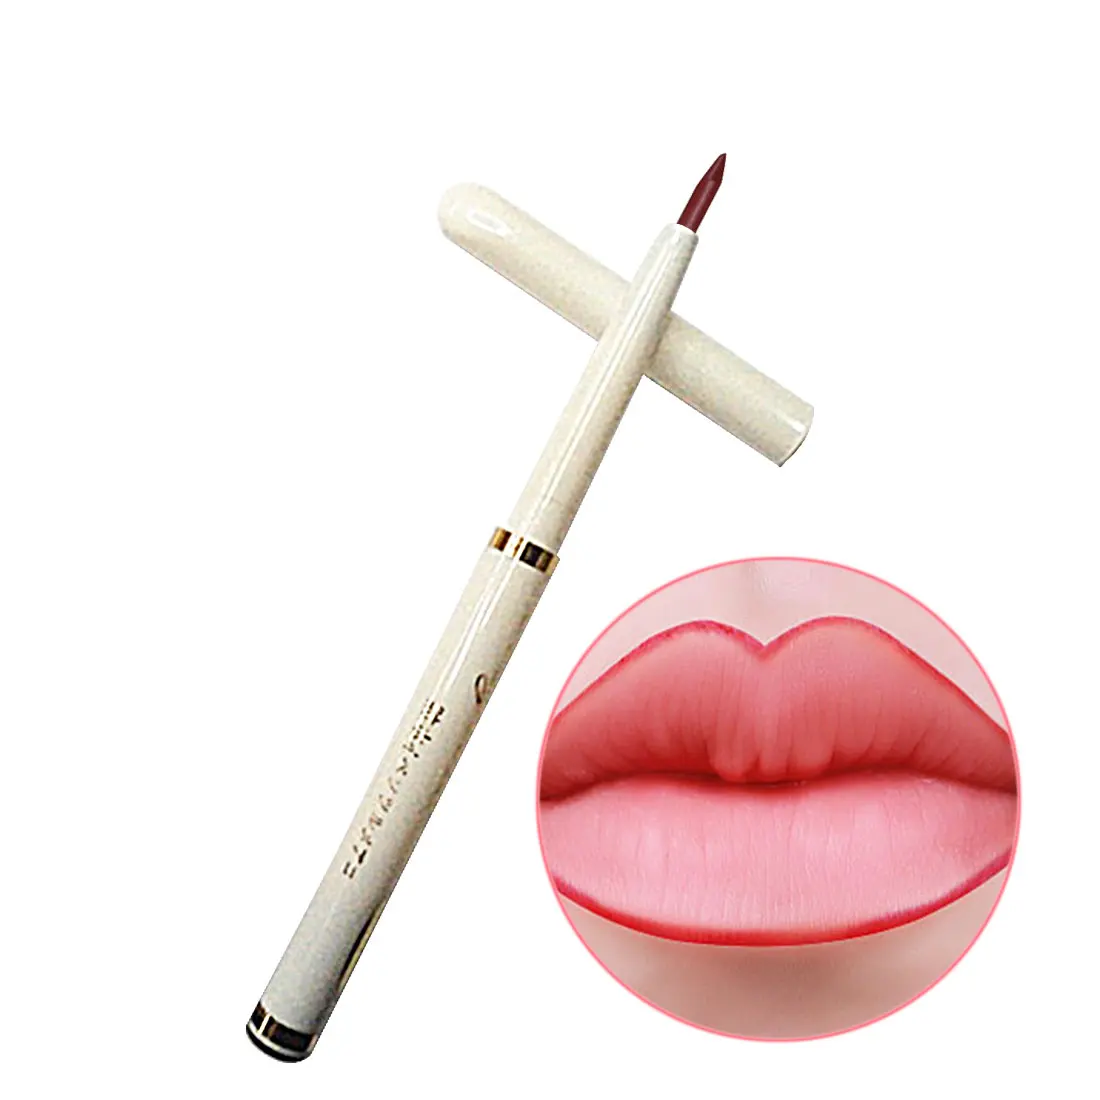 1 шт., автоматический вращающийся карандаш для губ, стойкий натуральный брендовый макияж, сексуальные продукты, женский водонепроницаемый карандаш для губ